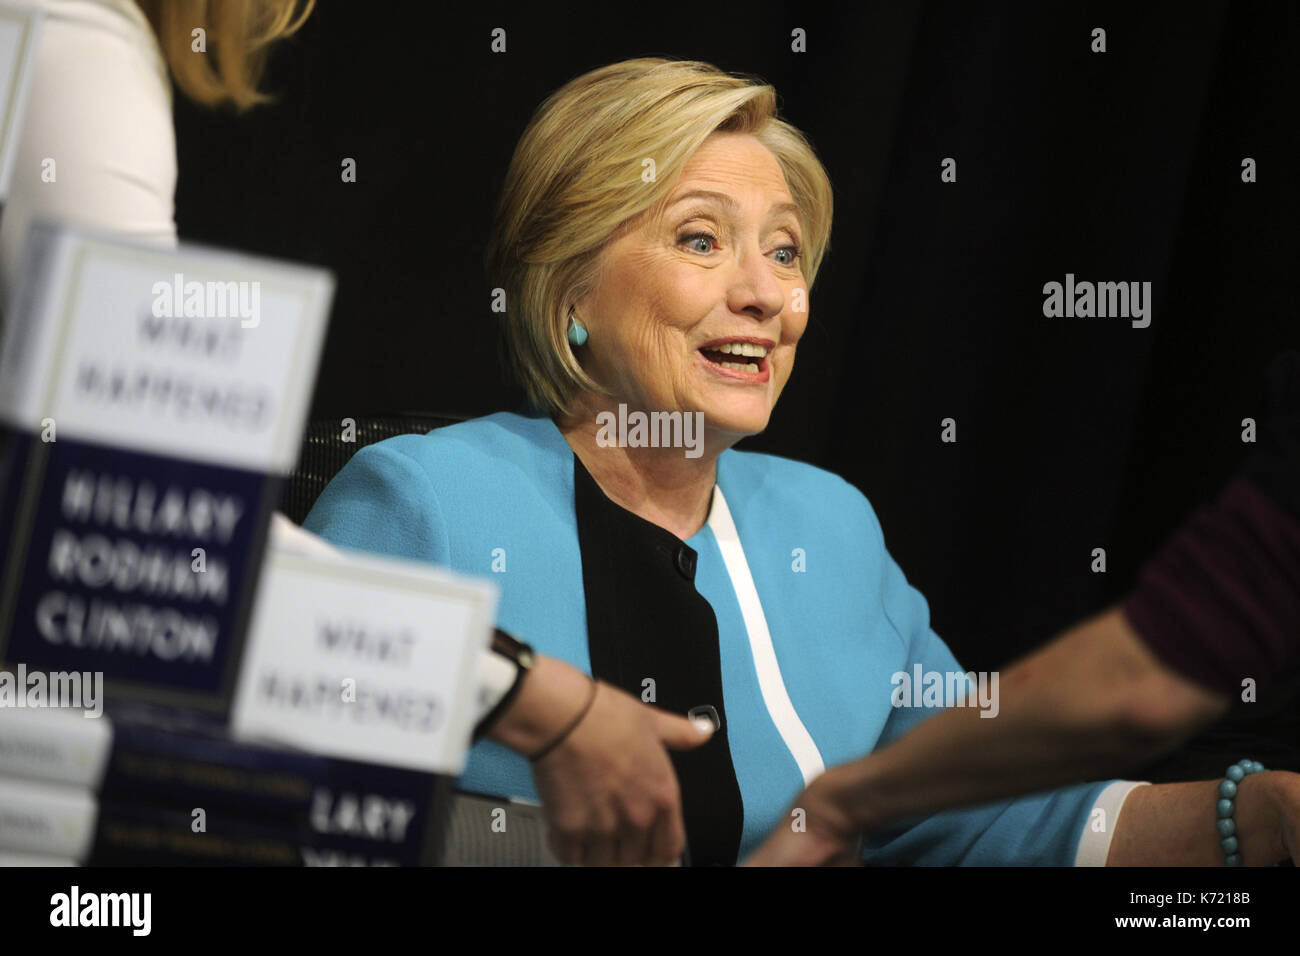 Ciudad de Nueva York. 12 de septiembre de 2017. Hillary Clinton firma copias de su libro, "What Say" en Barnes & Noble Union Square el 12 de septiembre de 2017 en la ciudad de Nueva York. | Verwendung weltweit/Picture Alliance crédito: dpa/Alamy Live News Foto de stock